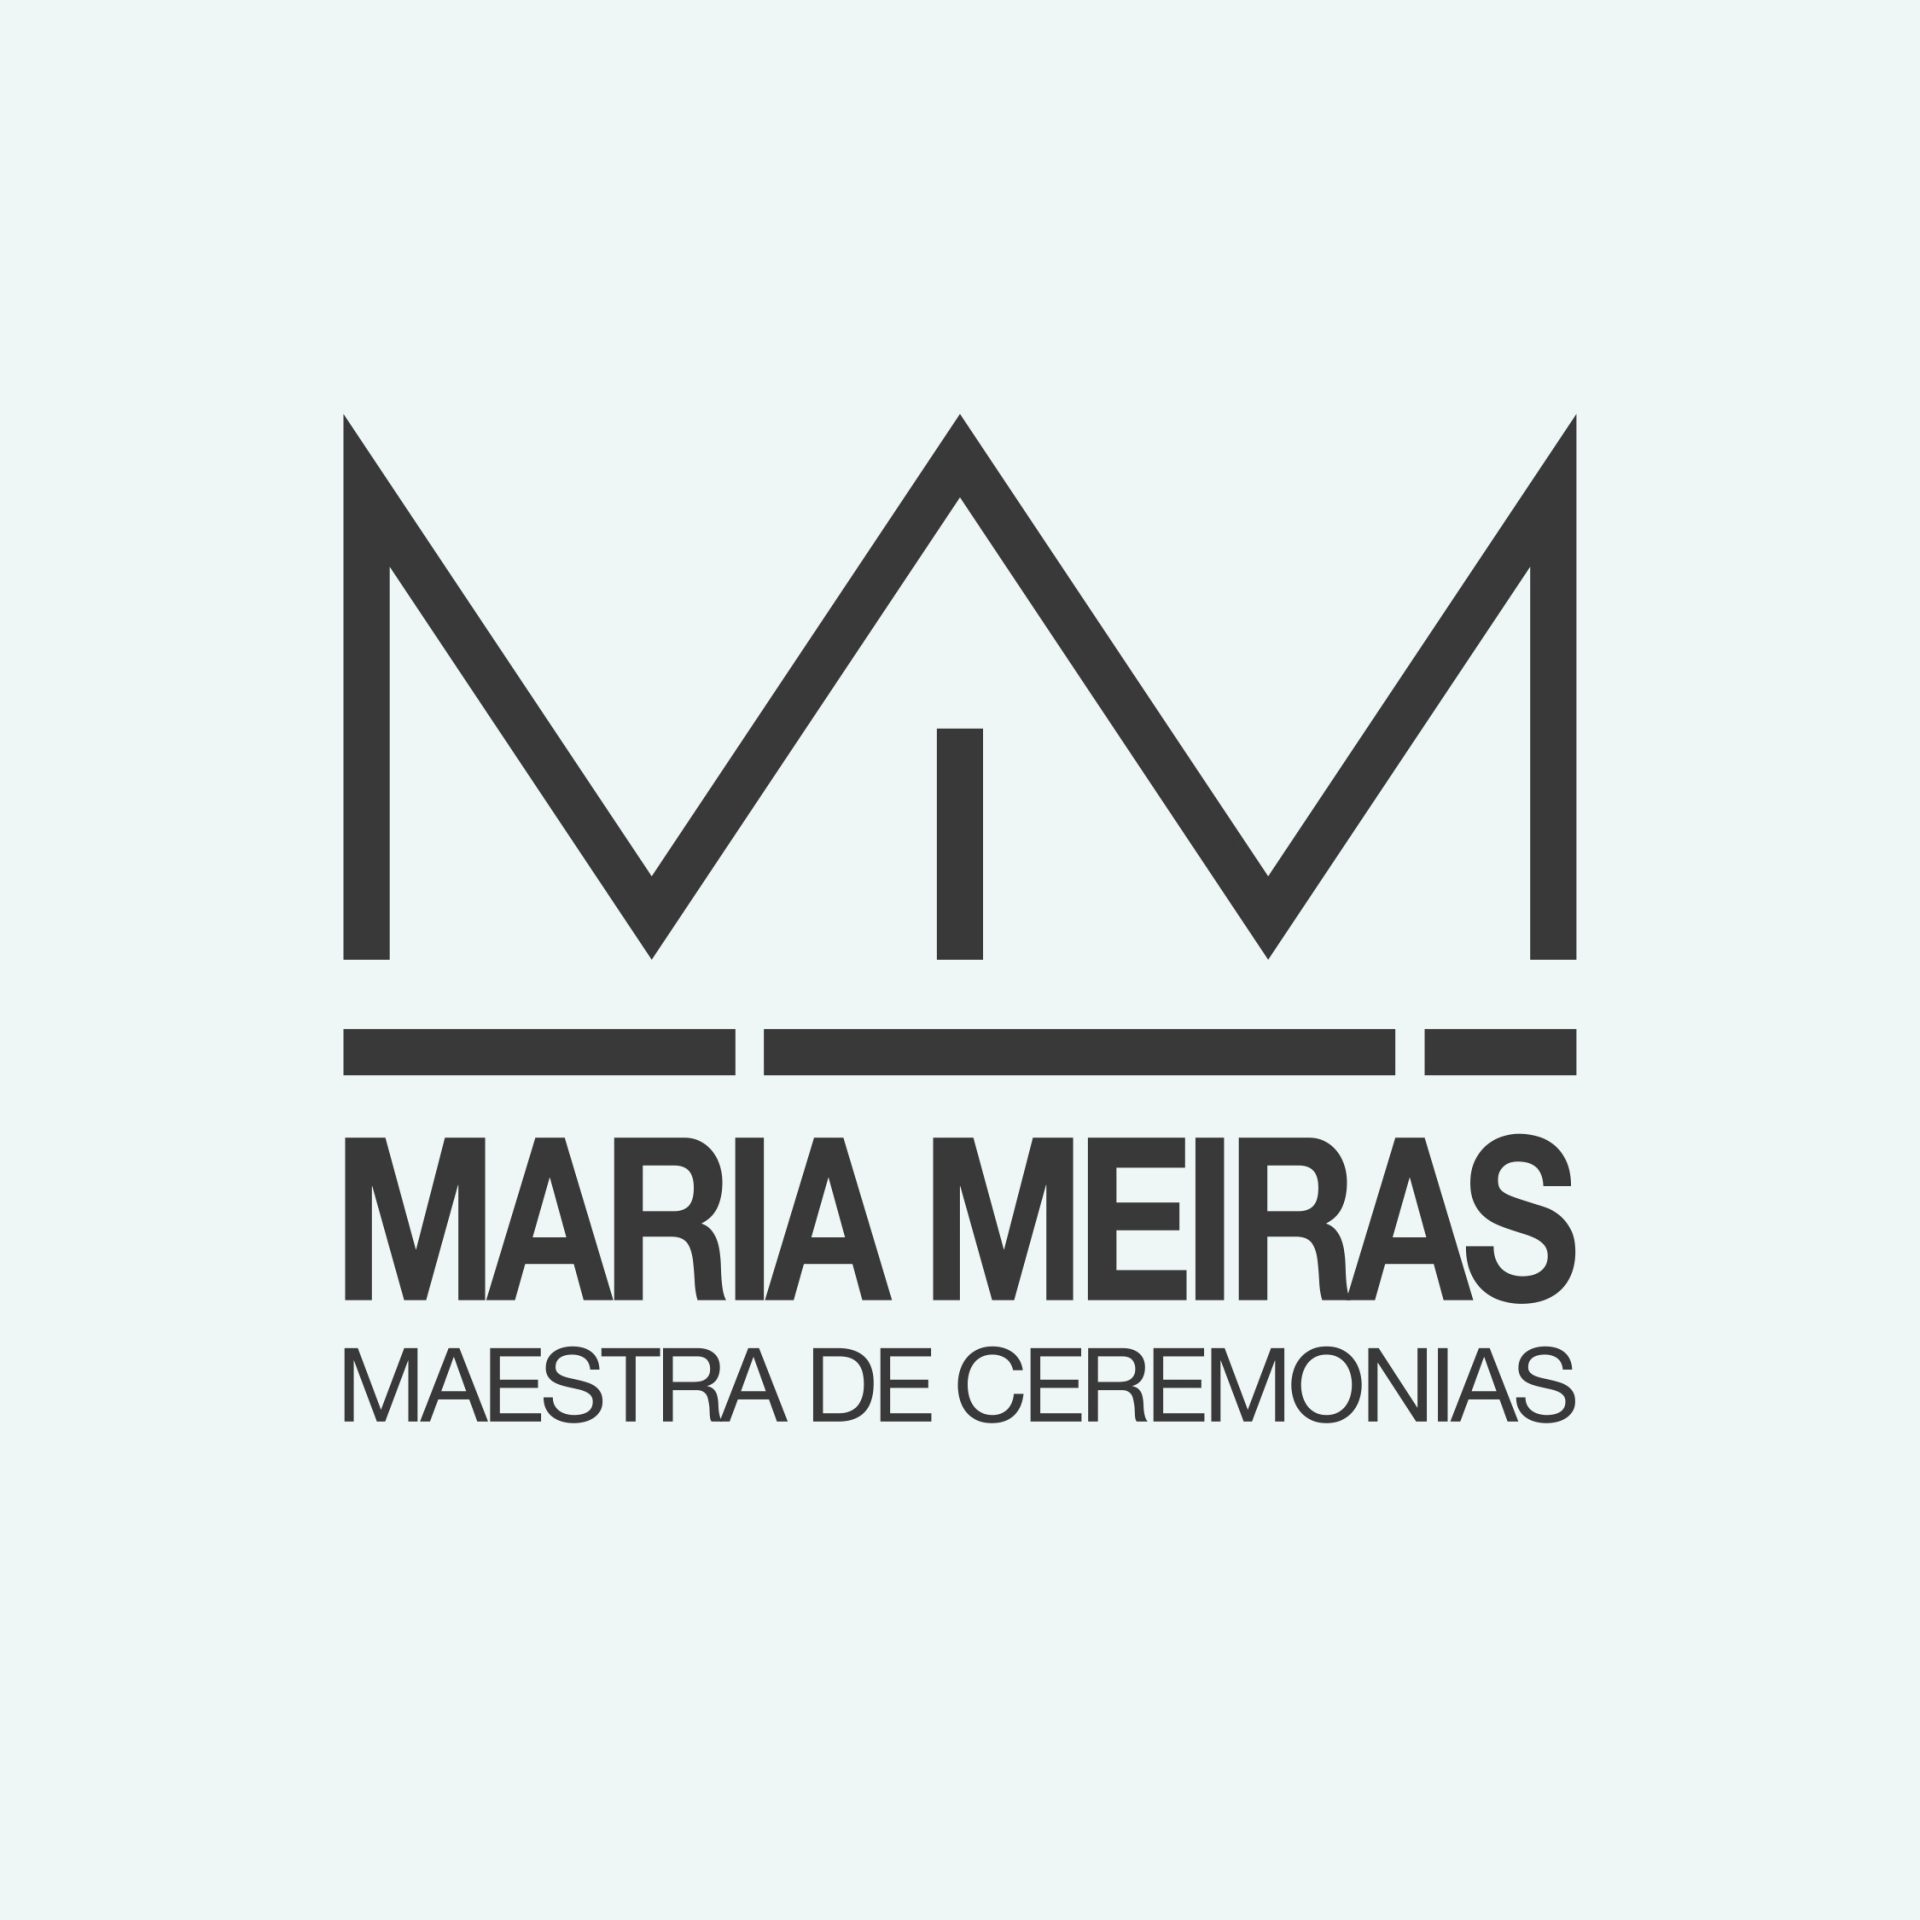 María Meirás Maestra de Ceremonias